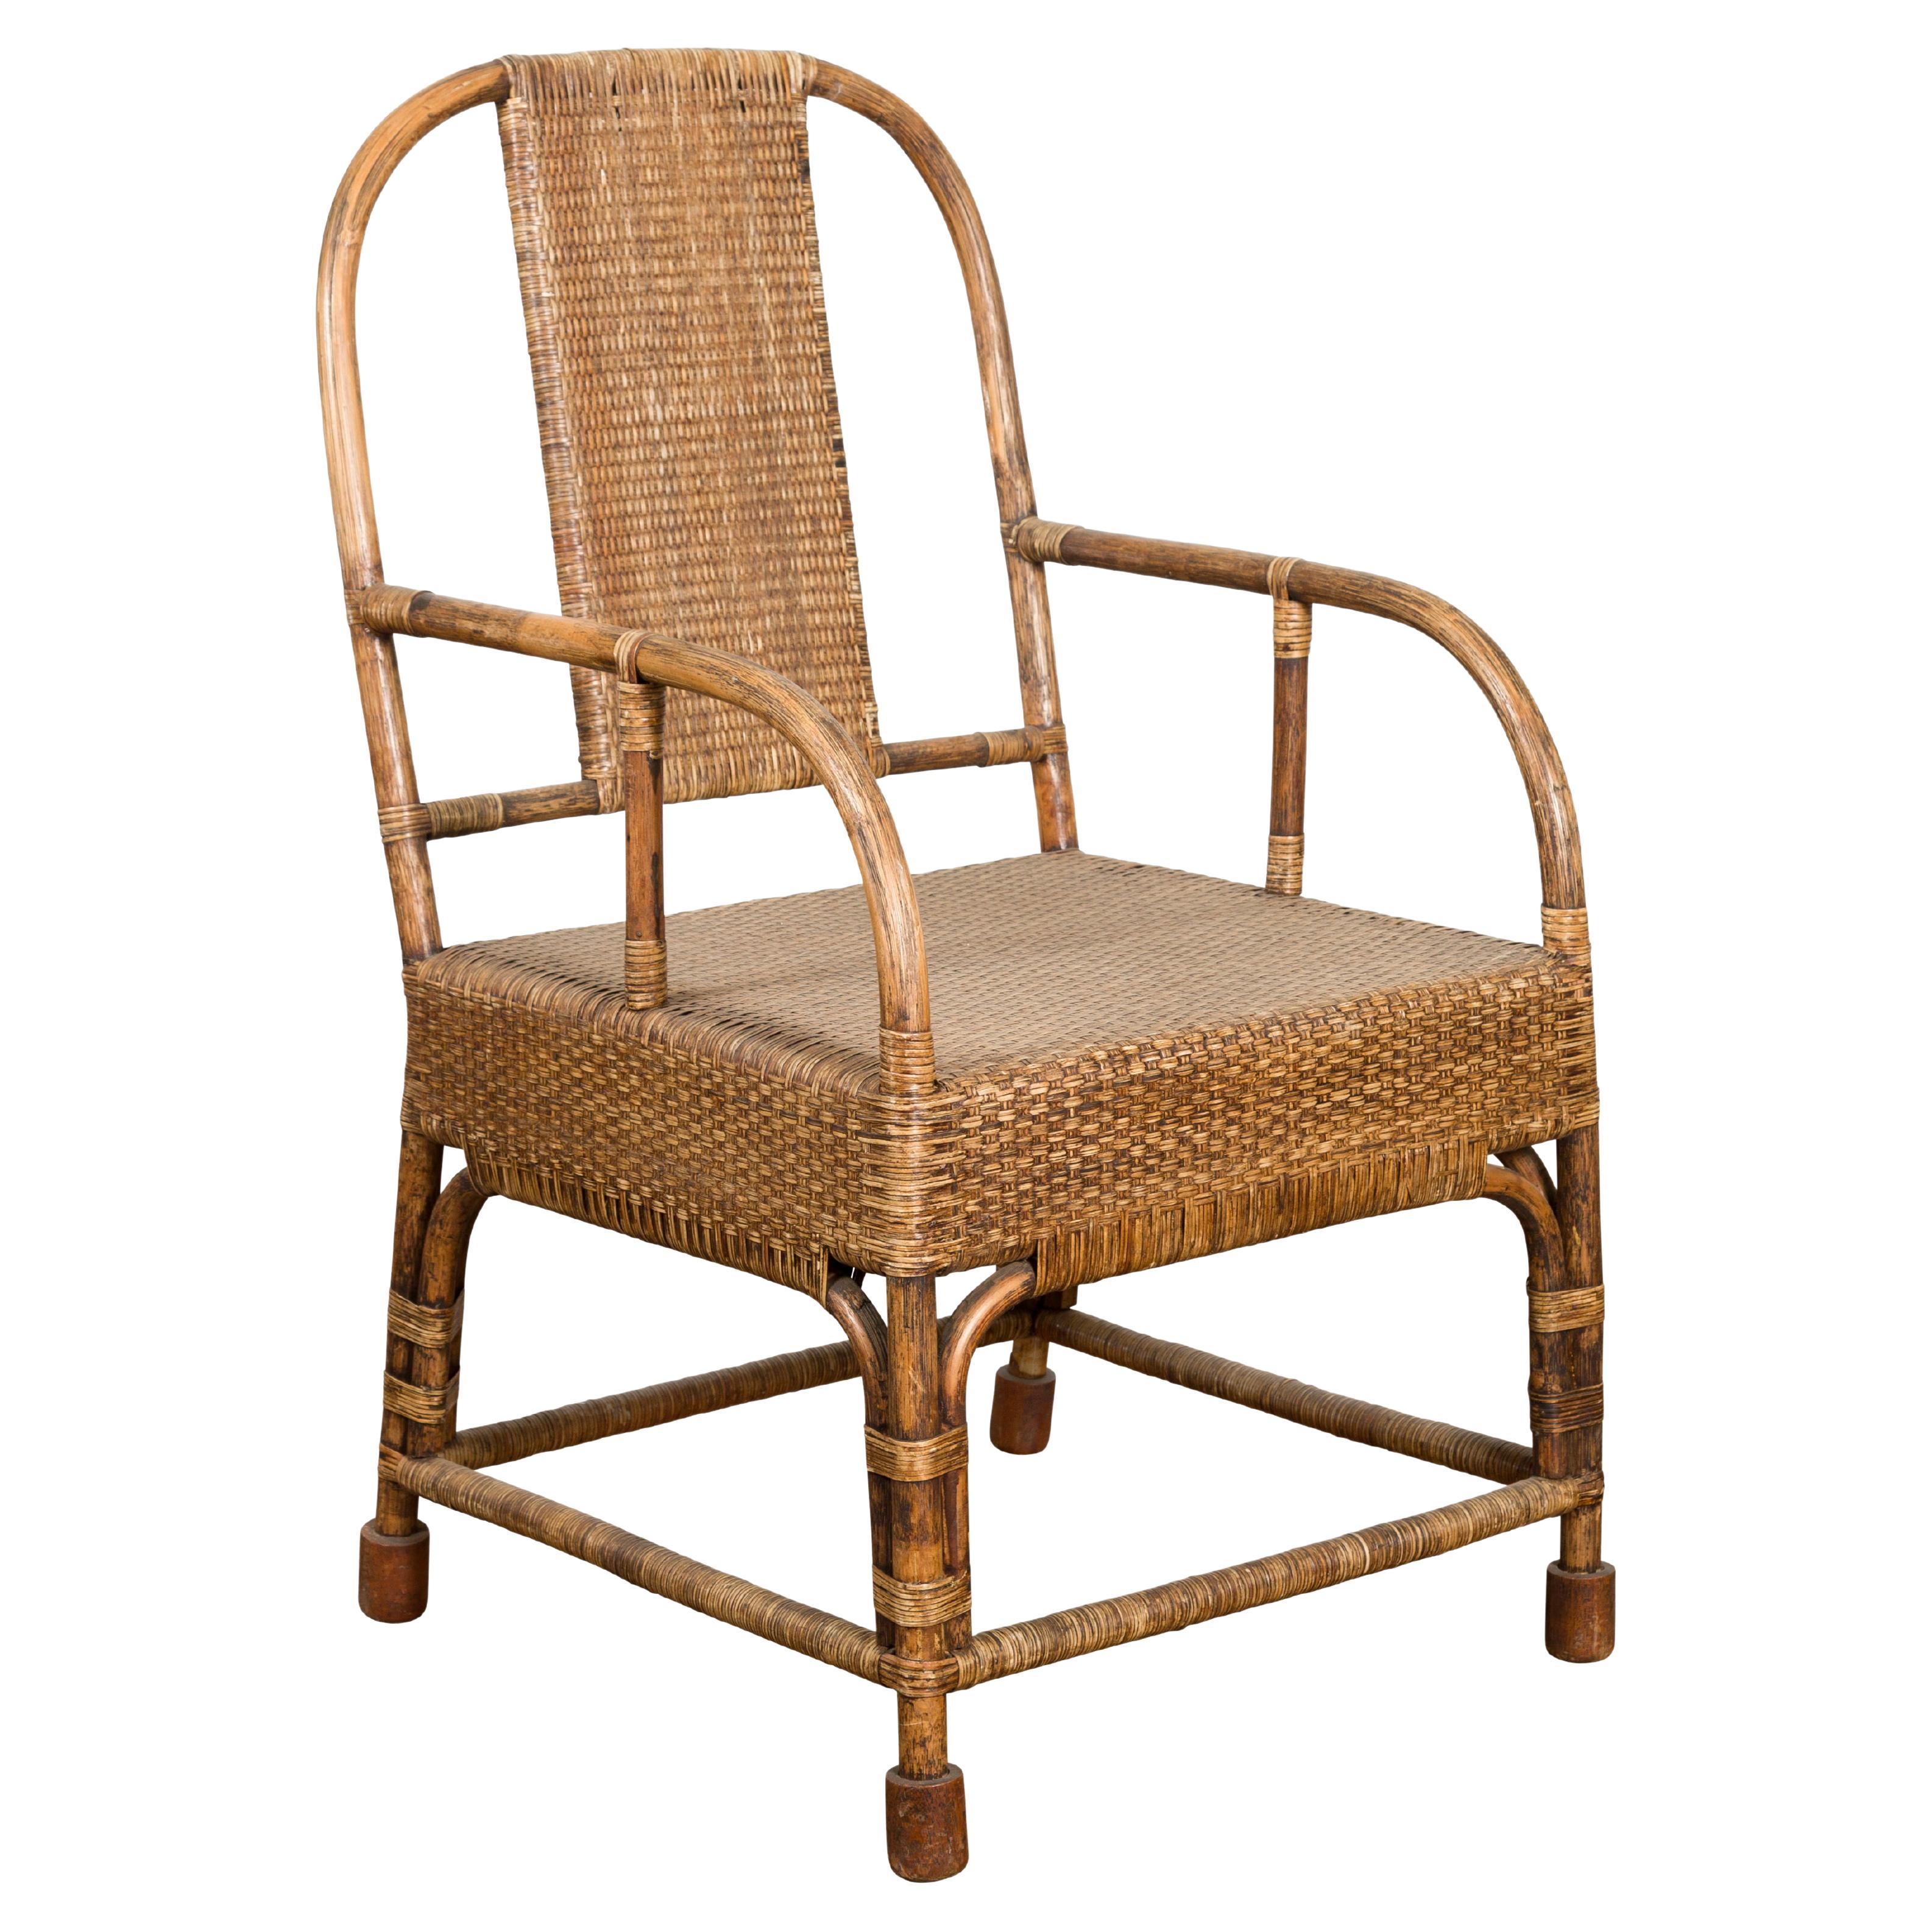 Birmanischer Vintage-Sessel aus handgeflochtenem Rattan im Landhausstil mit abgerundeter Rückenlehne